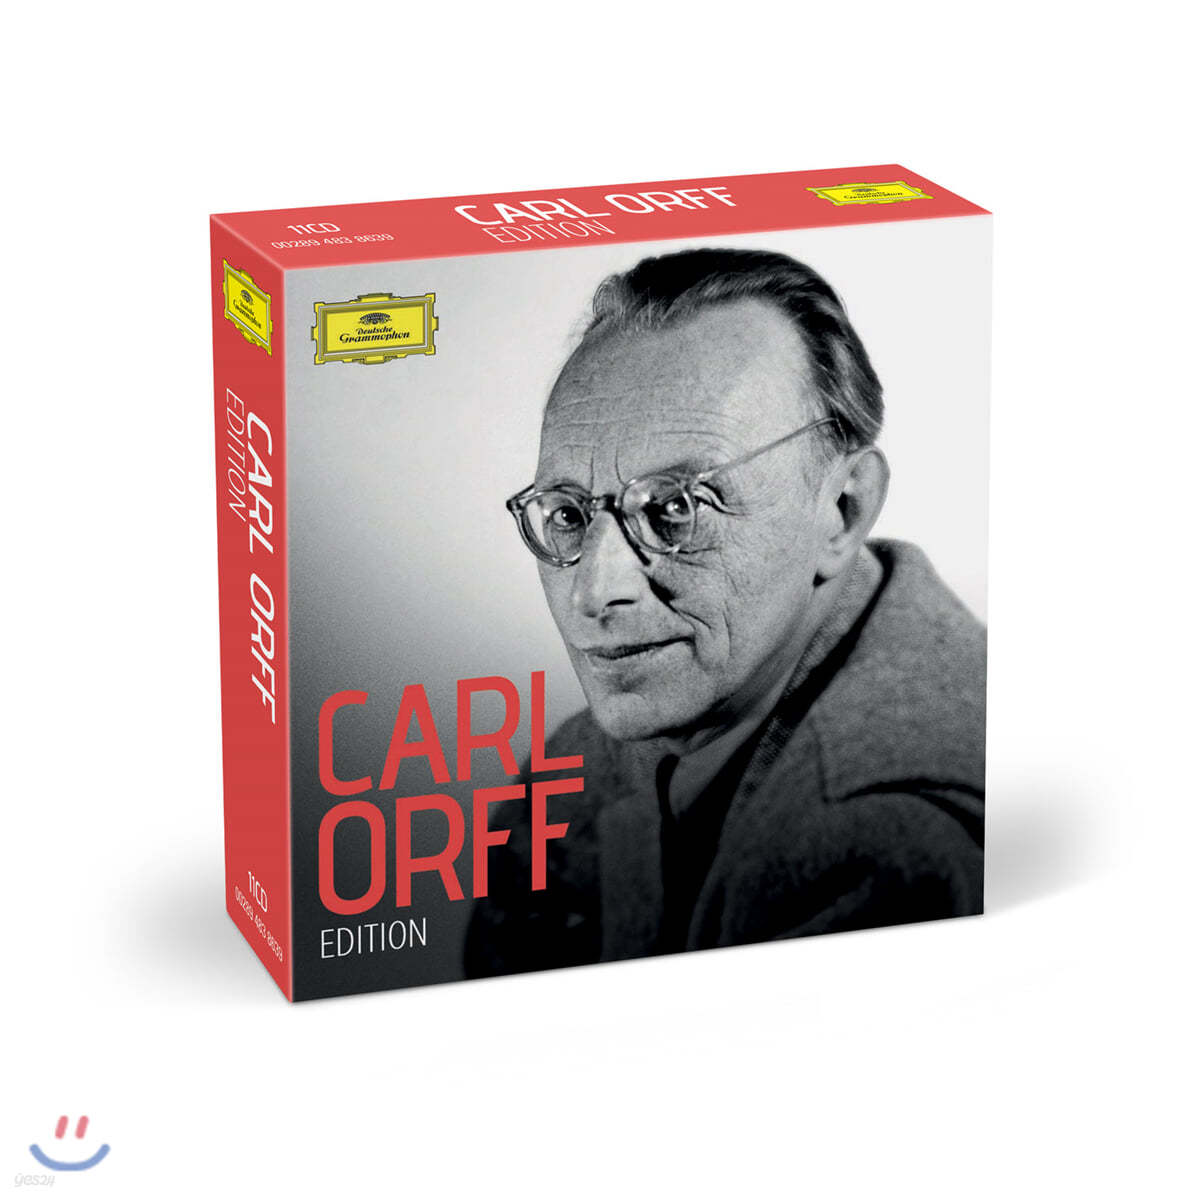 칼 오르프 탄생 125주년 기념 에디션 (Carl Orff Edition)